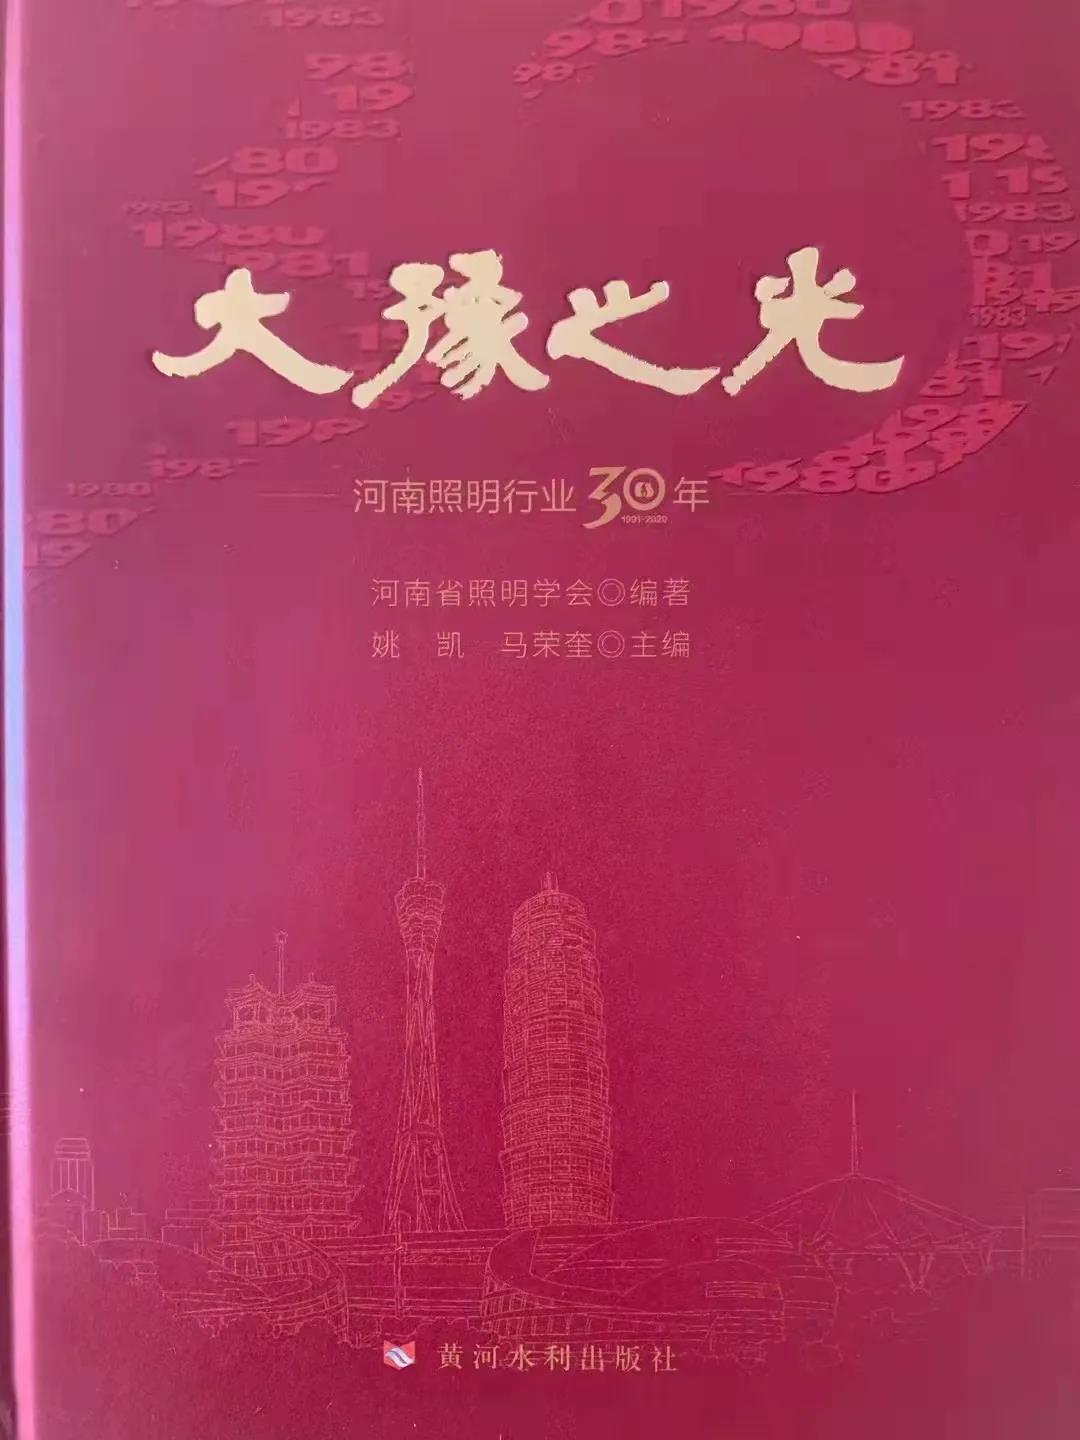 《大豫之光—河南照明行业30年》近日出版